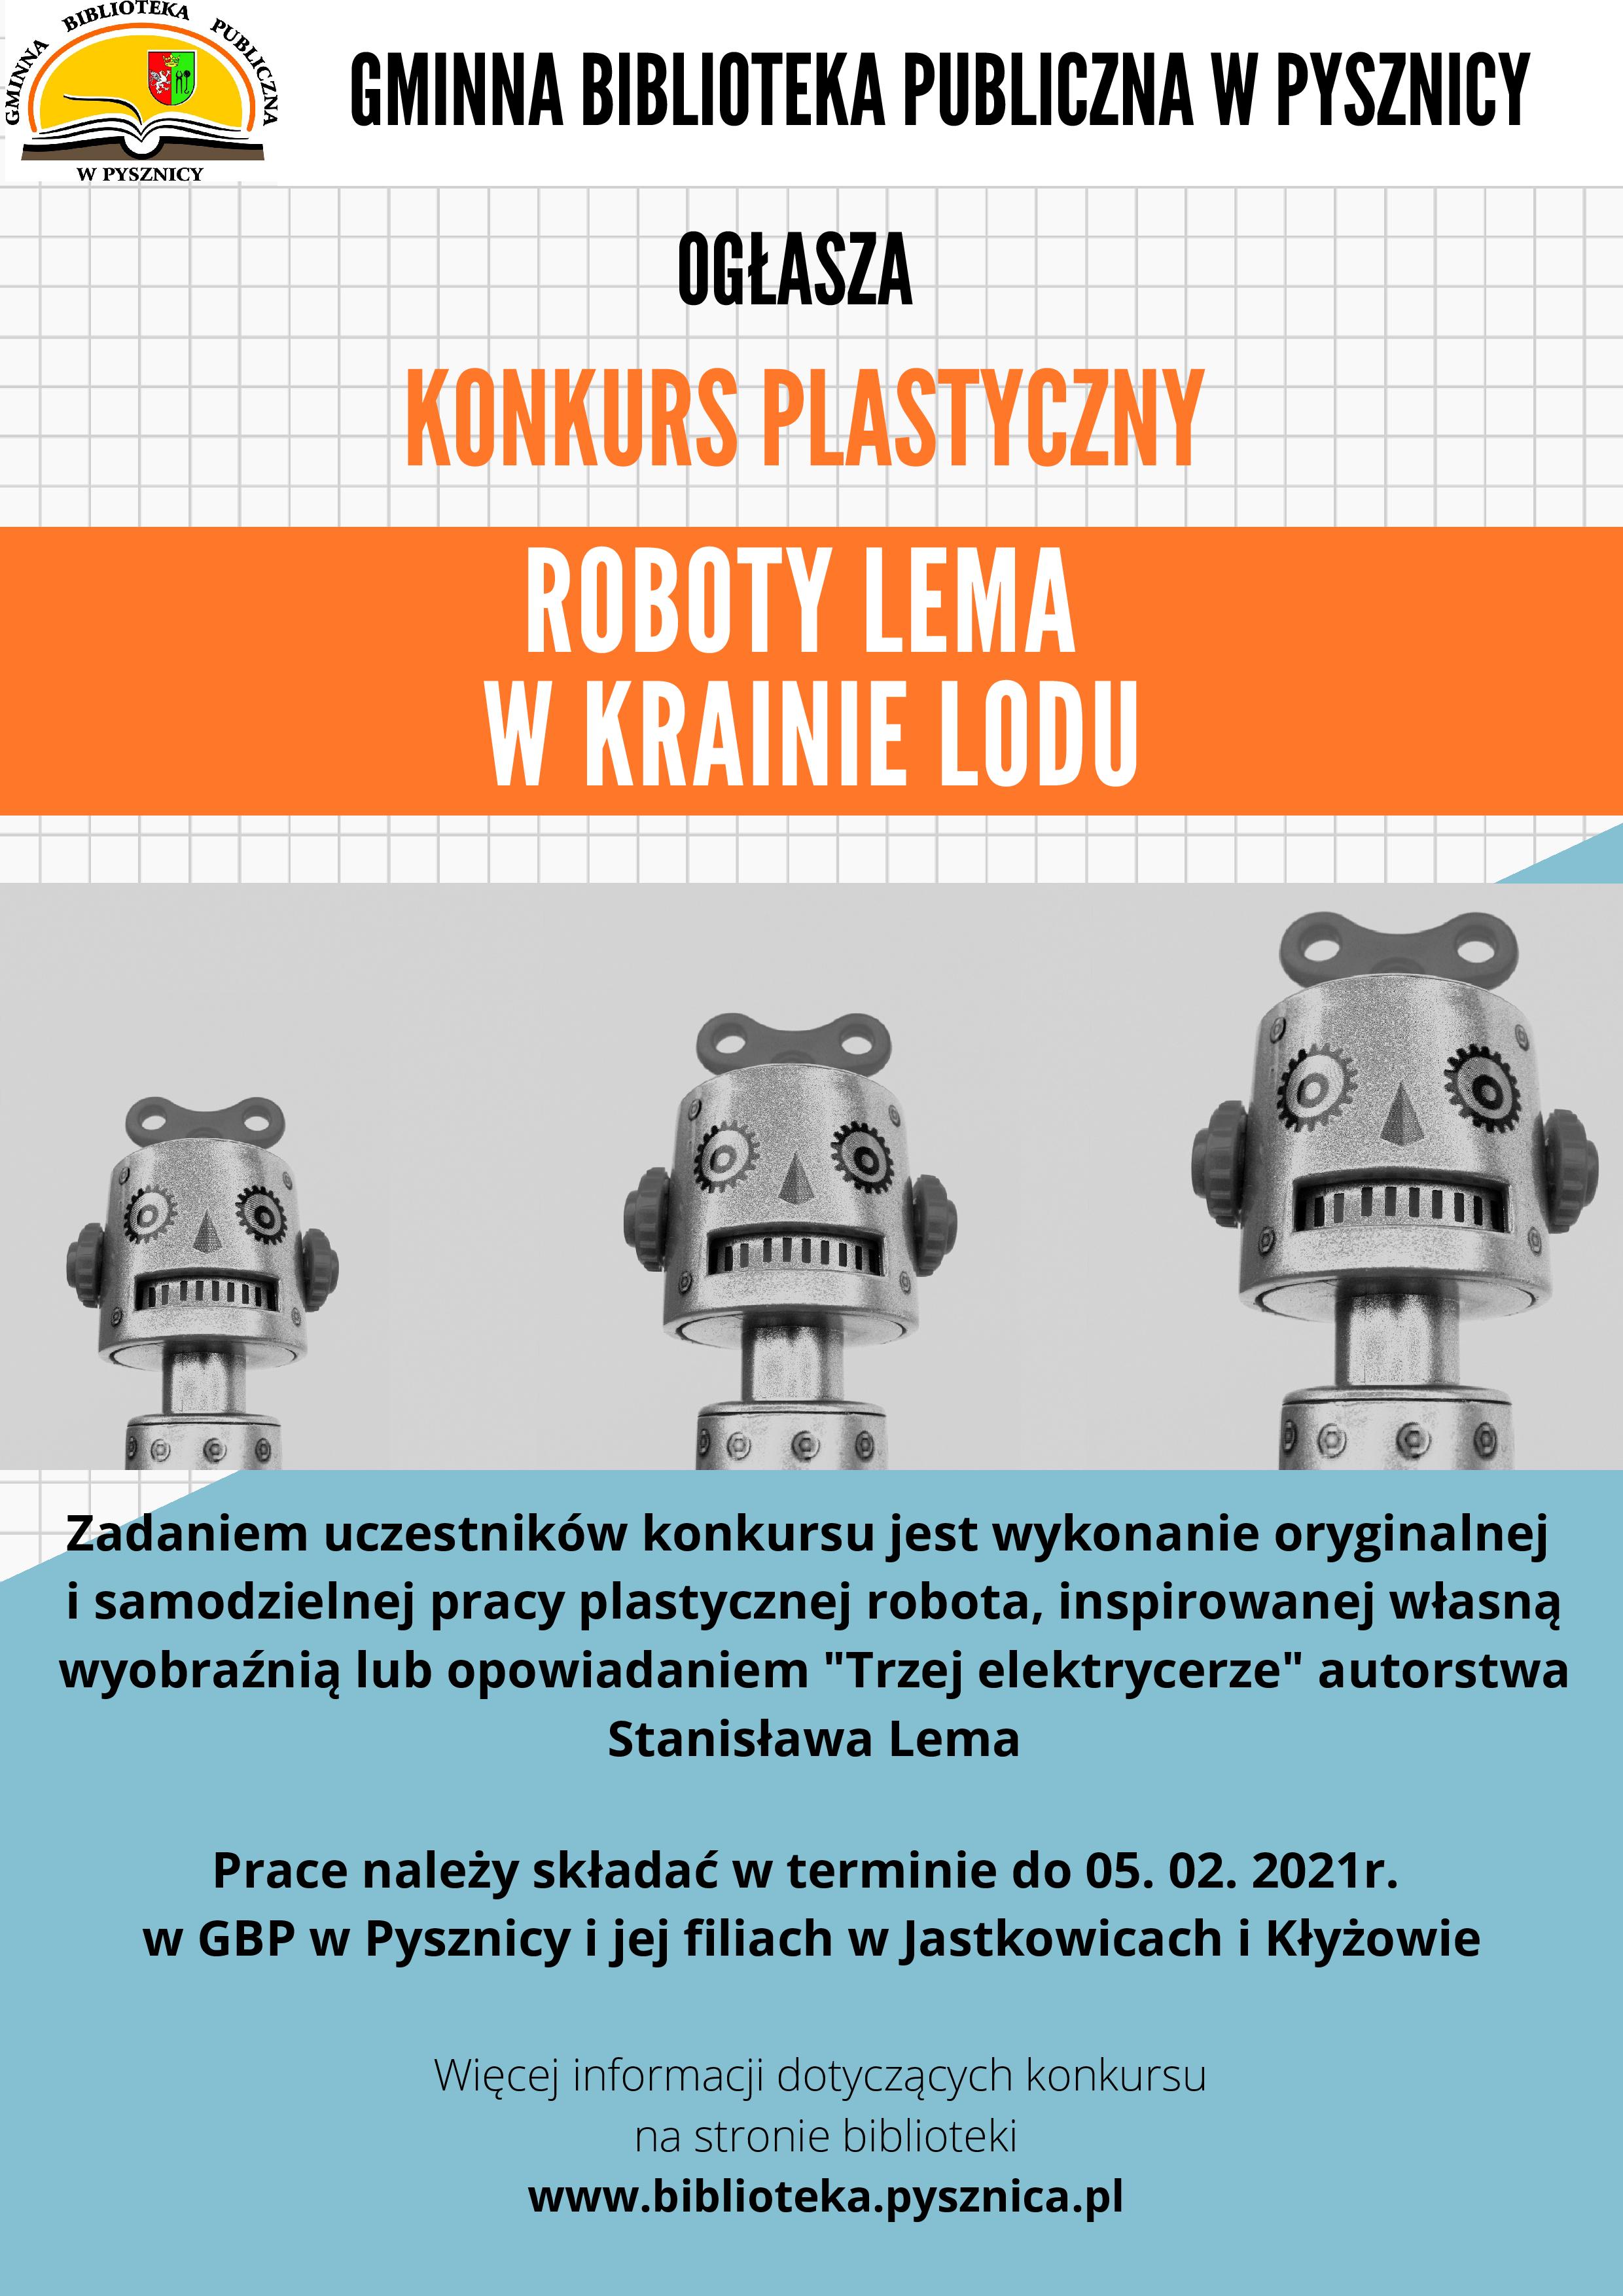  Konkurs plastyczny „Roboty Lema w krainie lodu”